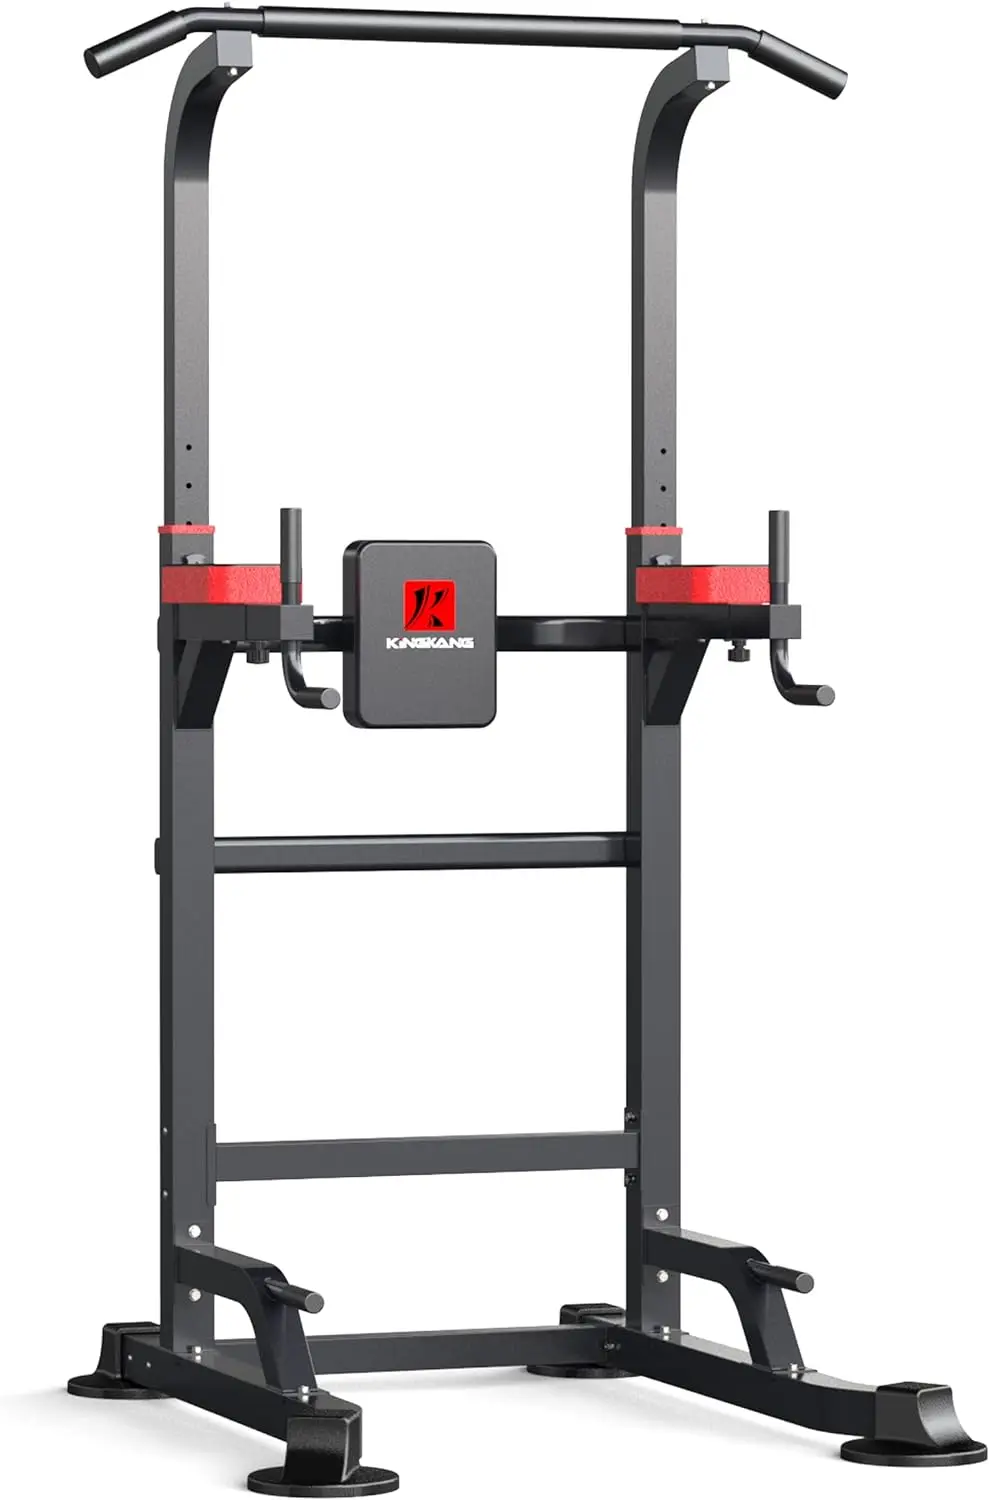 

Башенное оборудование для тренировок, балка для домашнего тренажерного зала с регулируемой высотой, оборудование для силовых тренировок и фитнеса